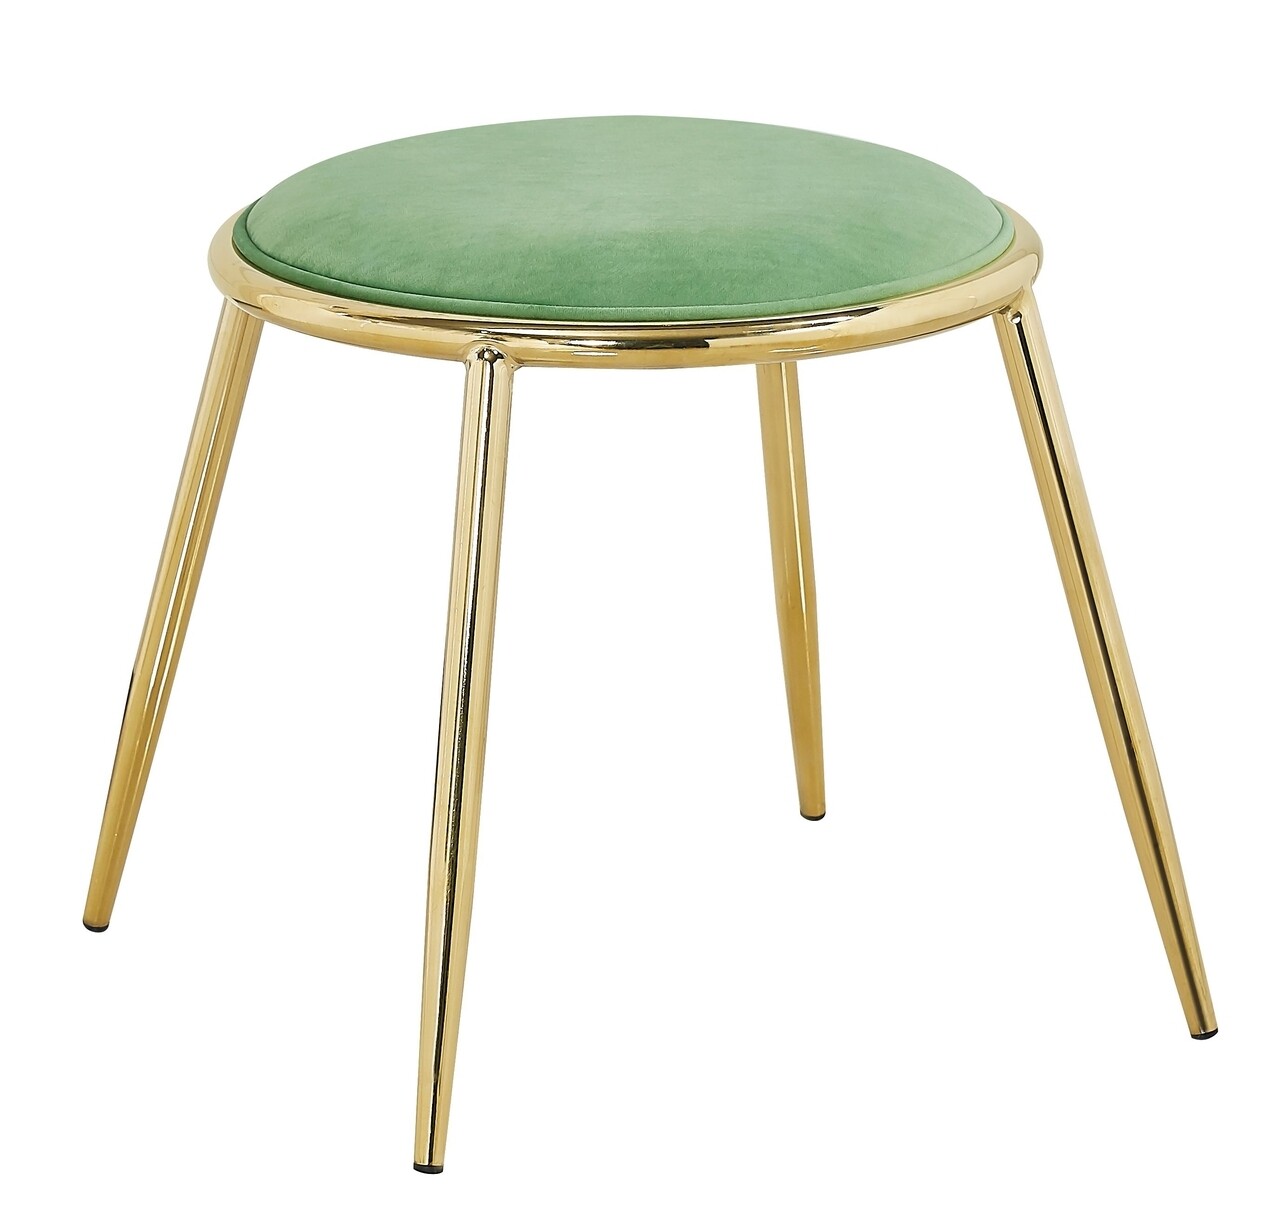 Glam emily szék, mauro ferretti, 45 x 45 cm, vas/poliészter, zöld/aranyszín